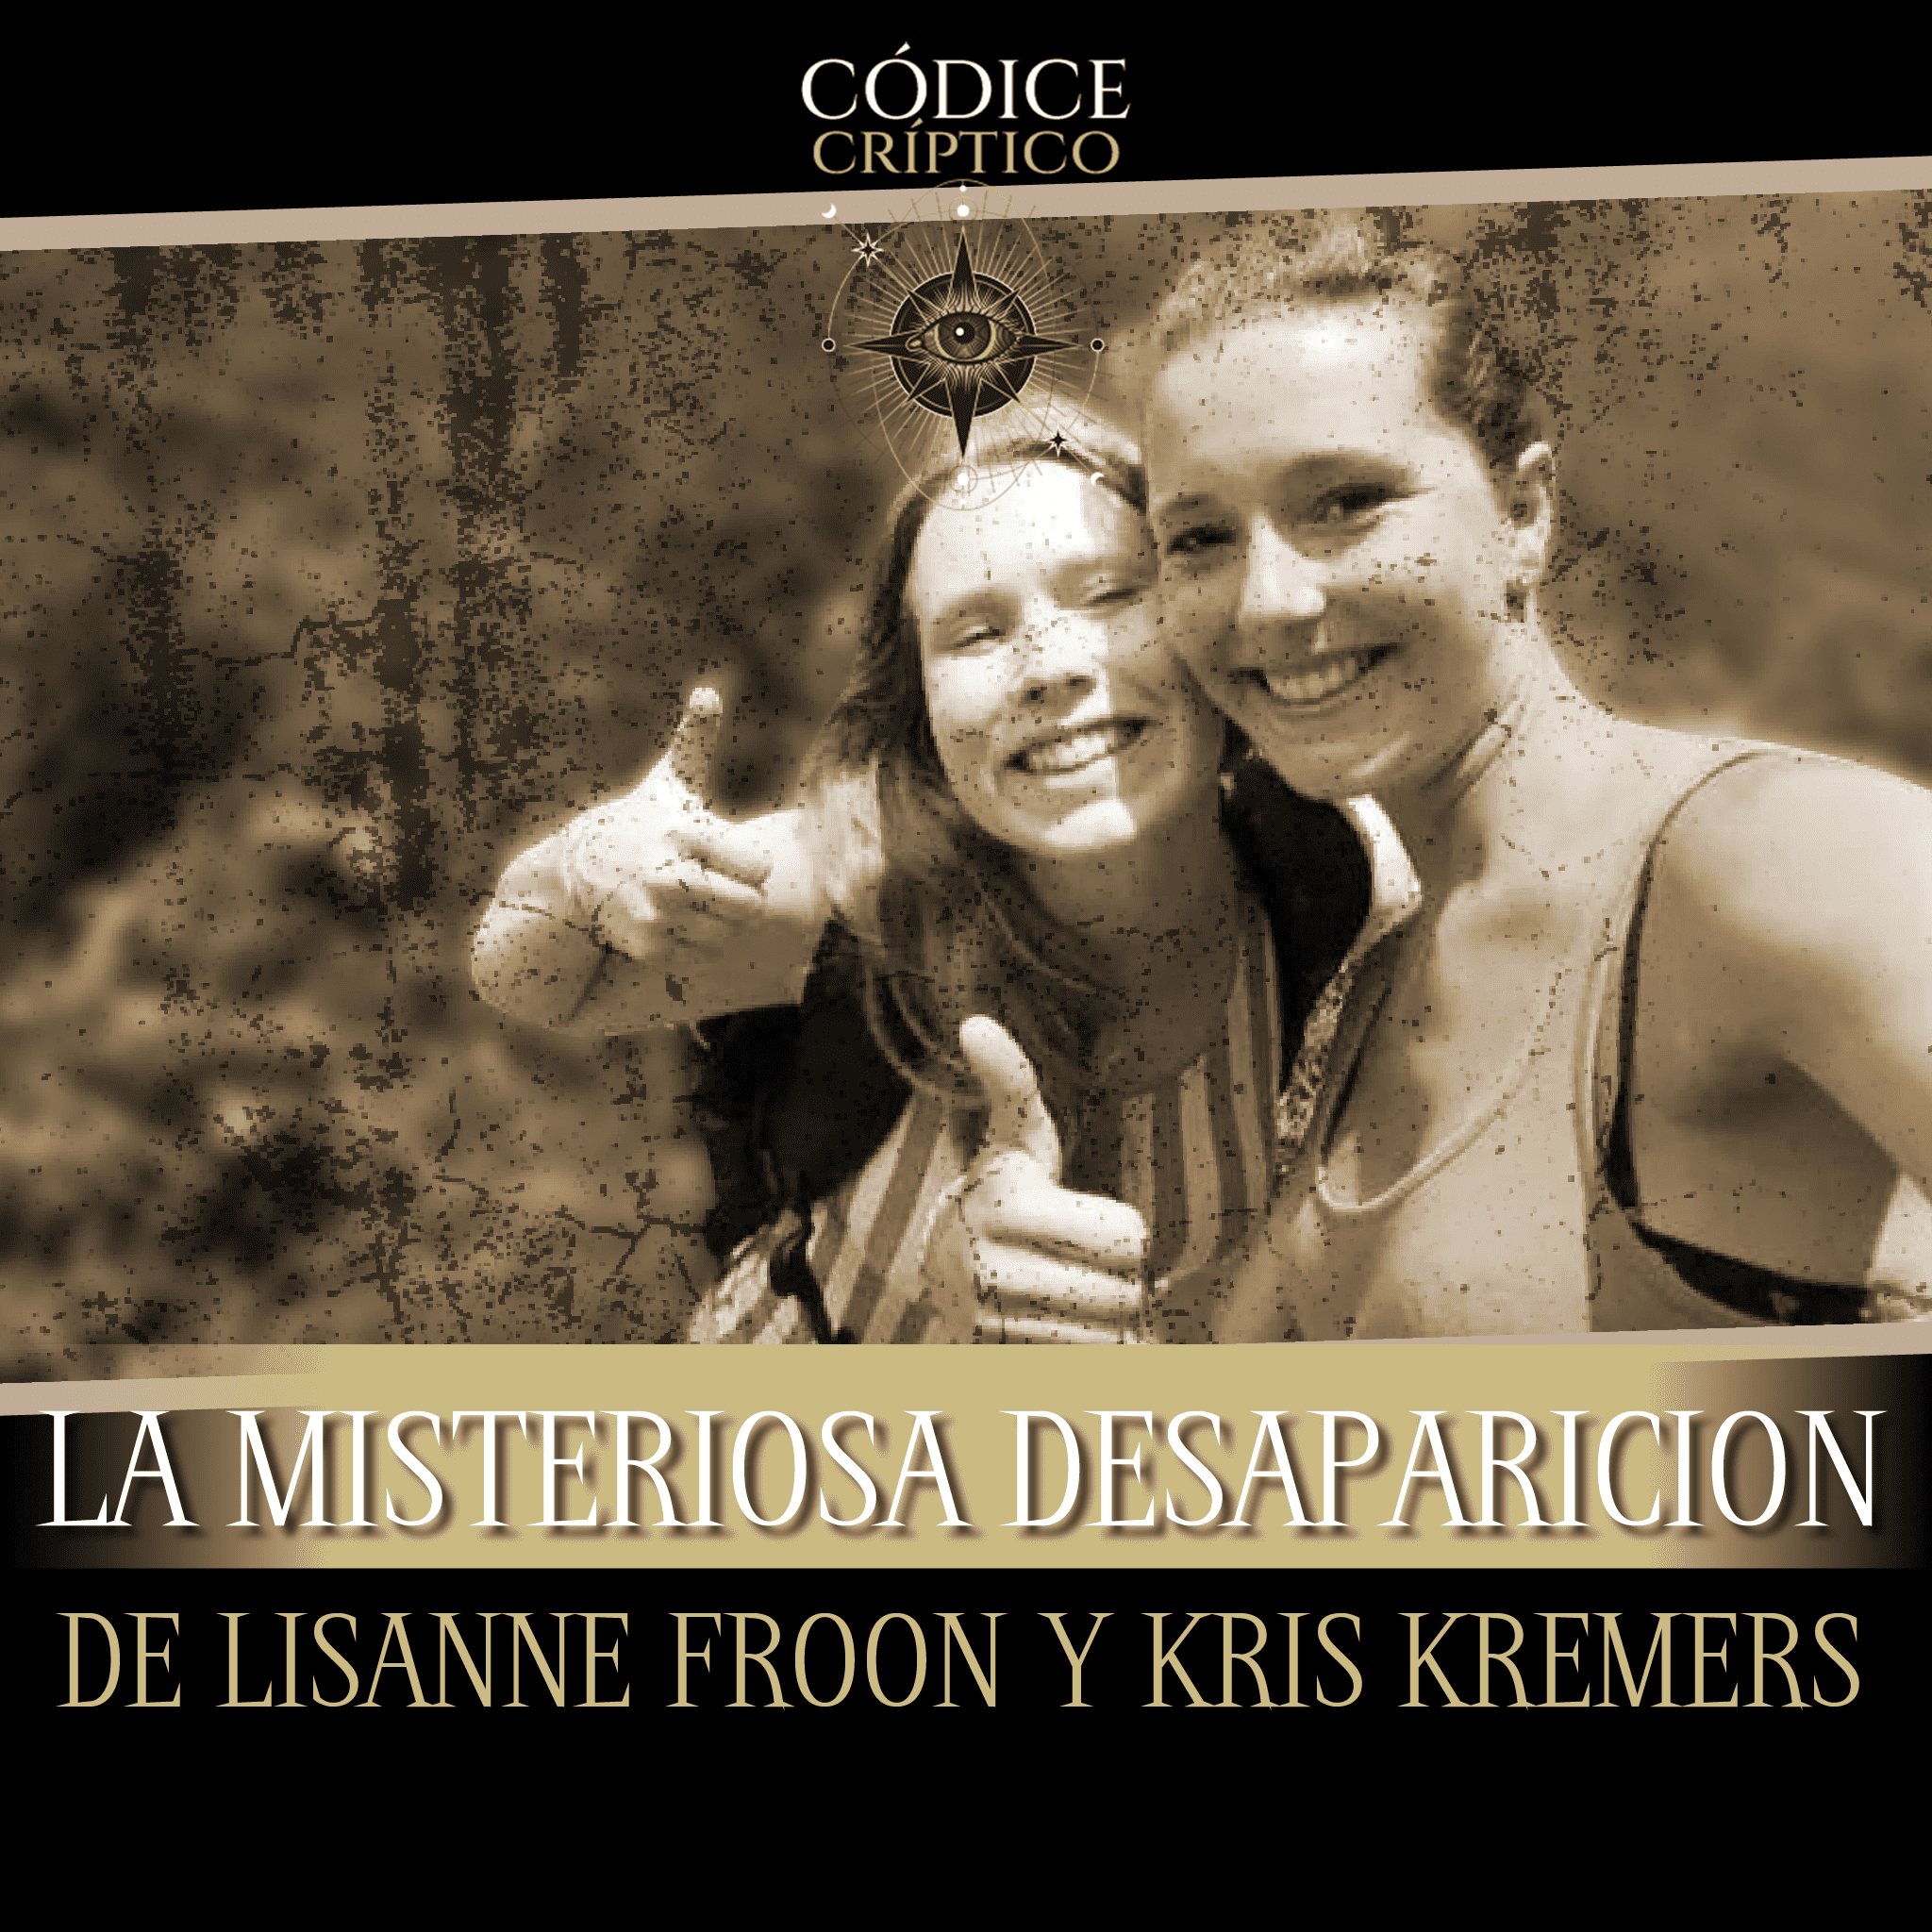 La desaparición de Lisanne Froon and Kriss Kremmers